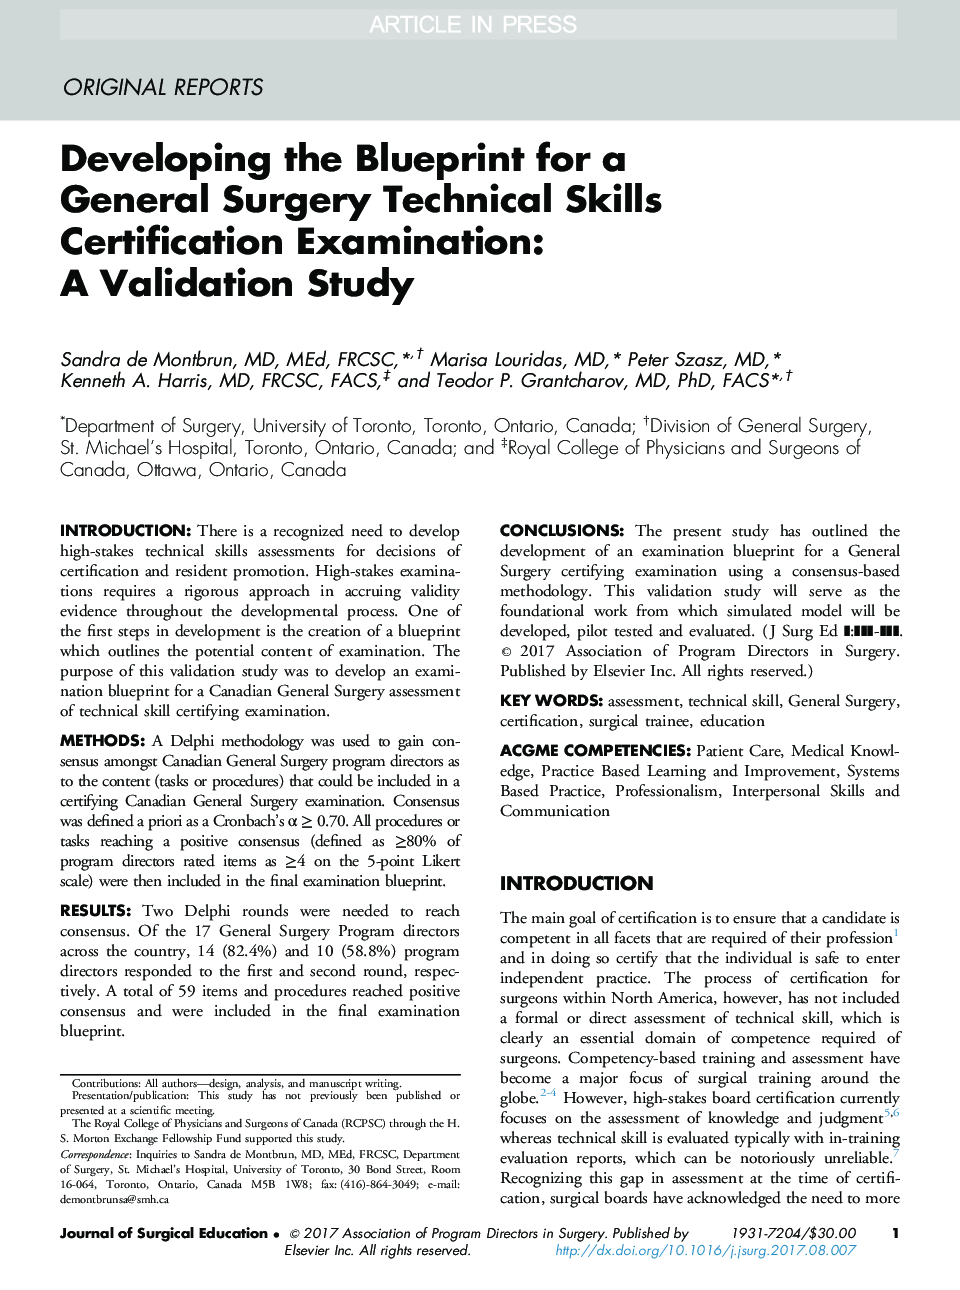 در حال توسعه طرح برای آزمون گواهینامه مهارت های فنی جراحی عمومی: یک مطالعه معتبر 